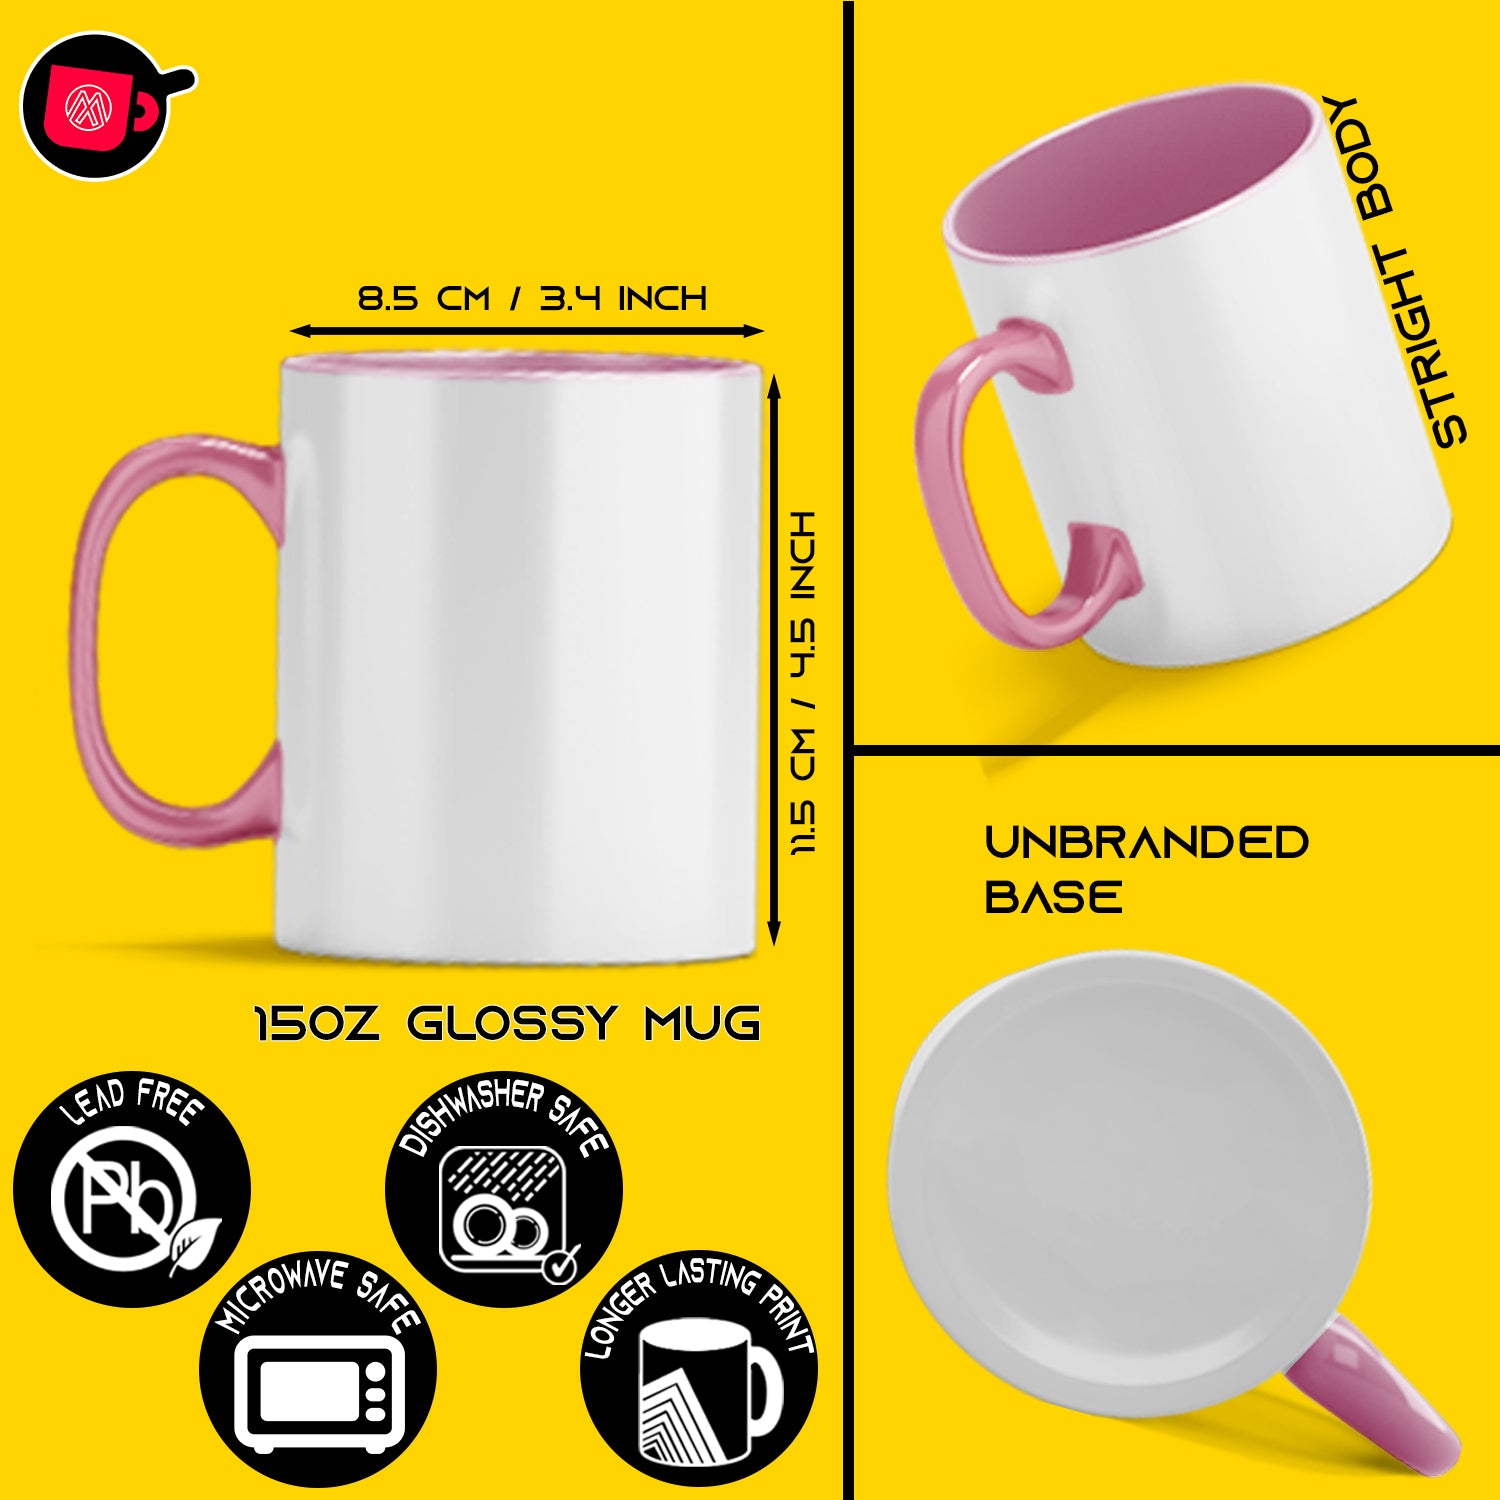 Premium sublimation 15 oz mugs in Unique and Trendy Designs